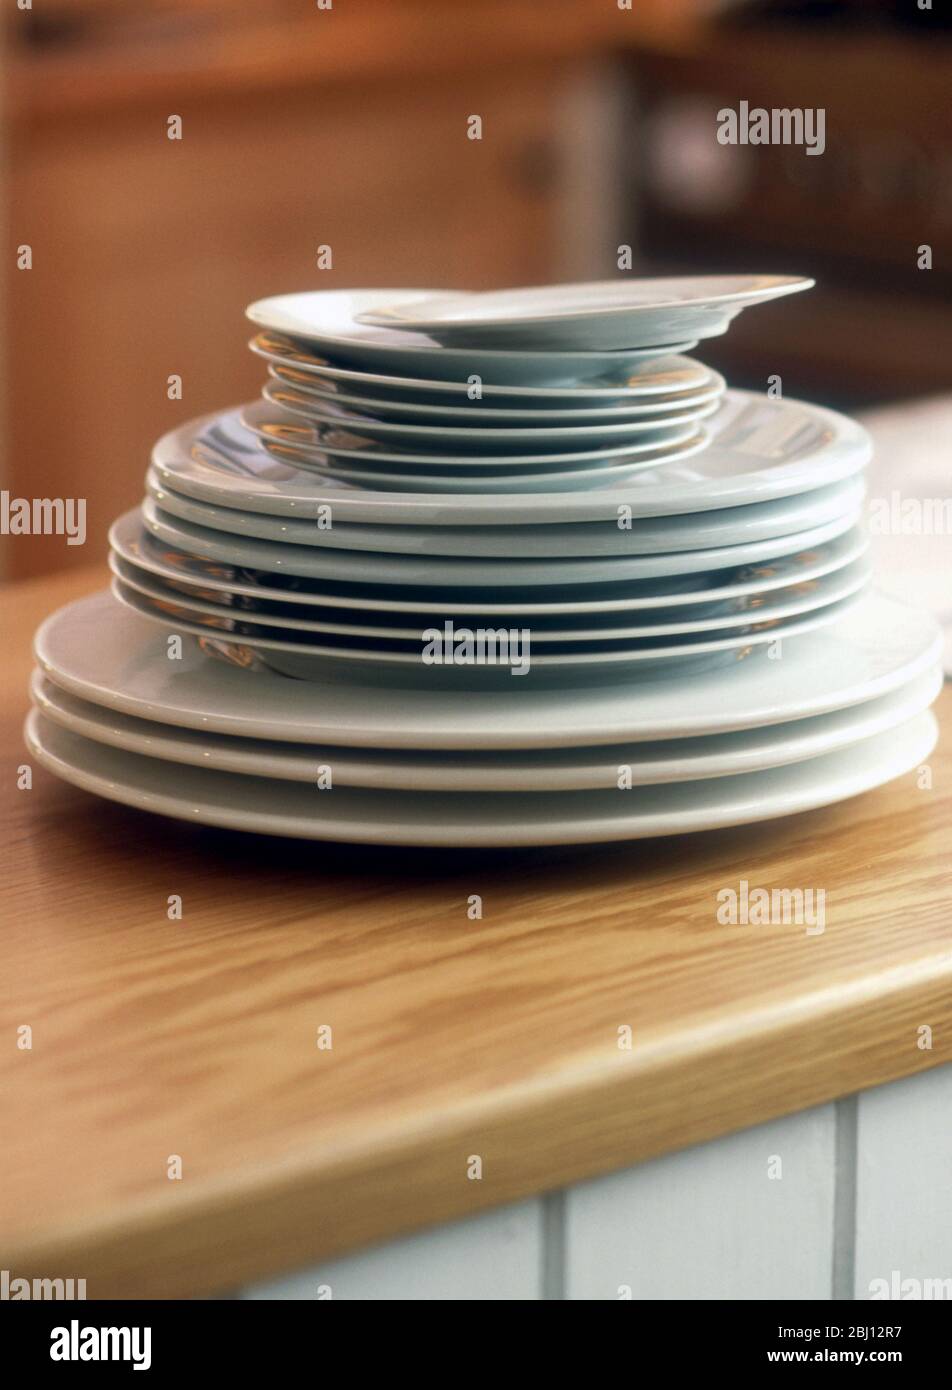 Platten in drei verschiedenen Größen auf einer Arbeitsplatte gestapelt - Stockfoto